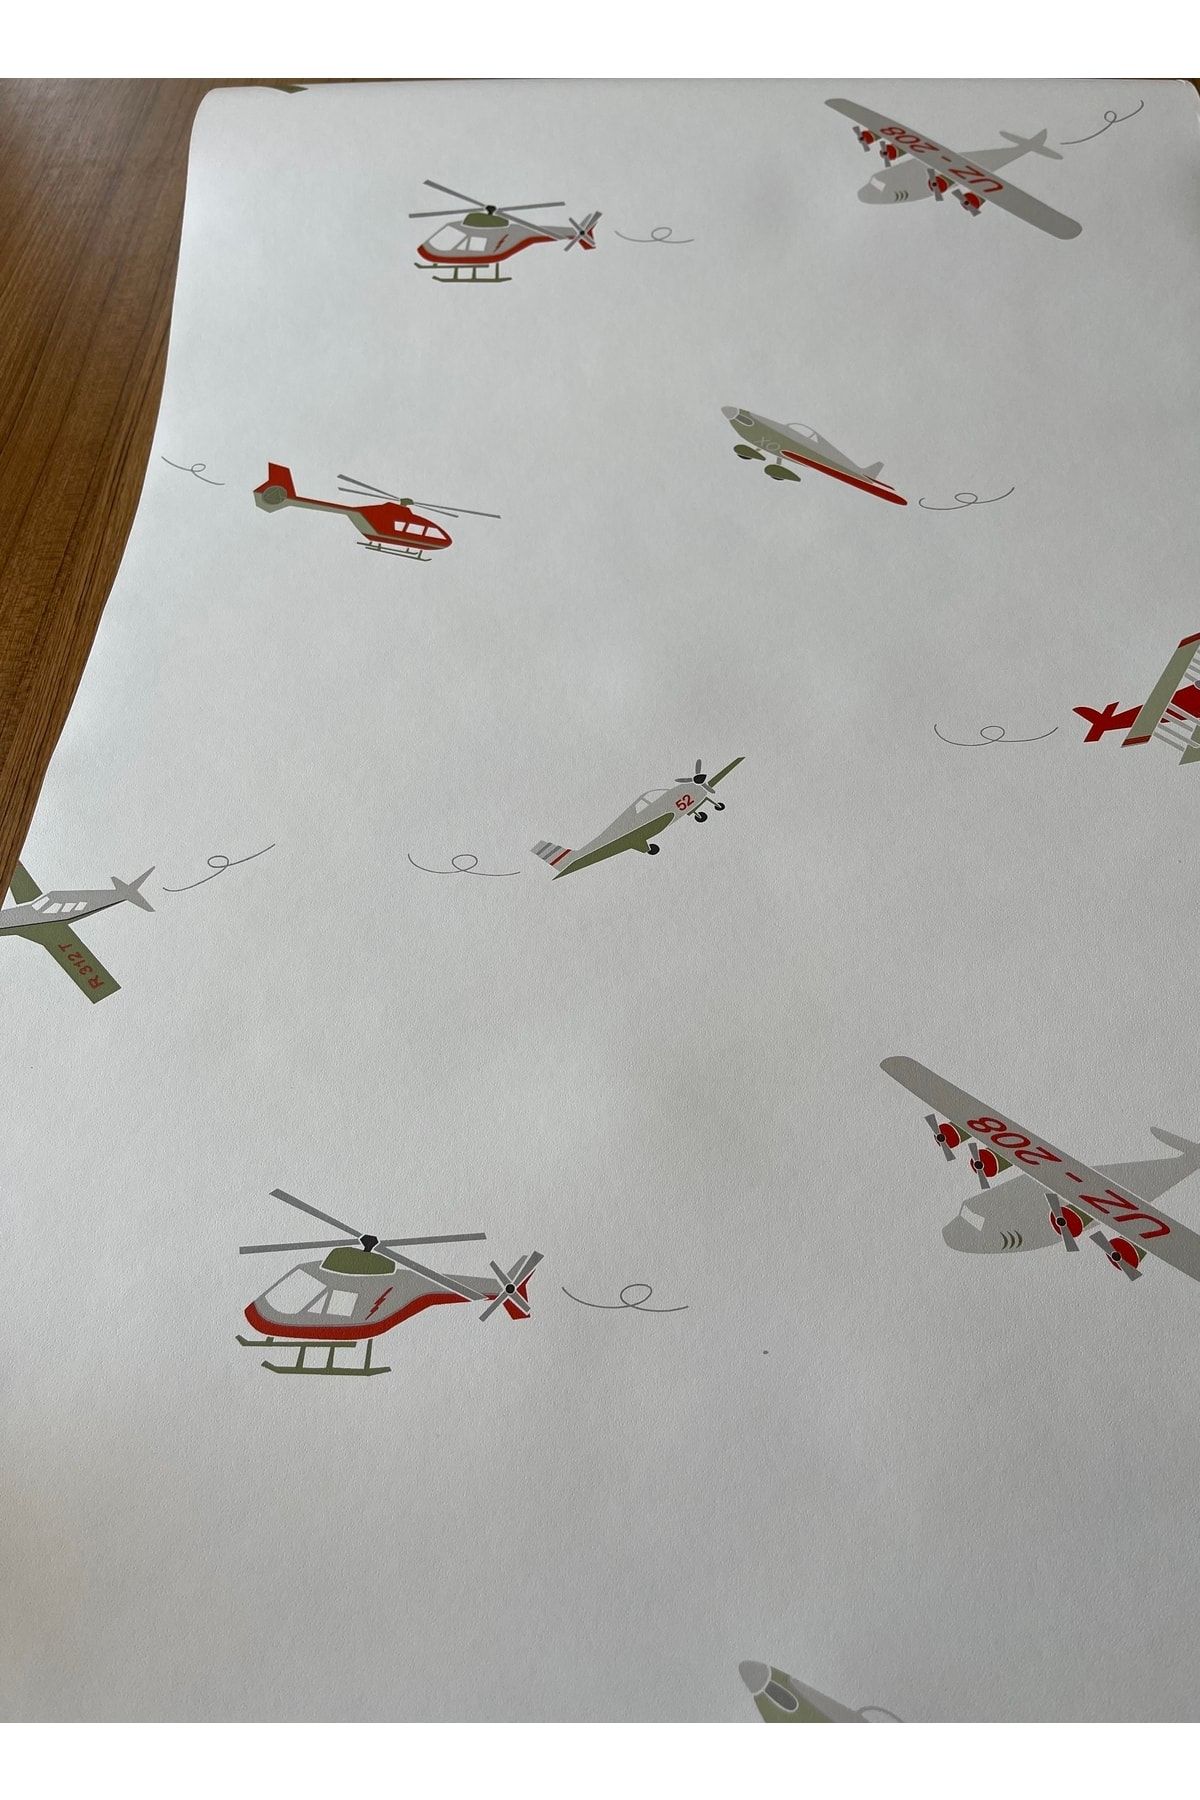 BAŞYAPI DİZAYN Helikopter-uçak Desenli Çocuk-bebek Odası Ithal Duvar Kağıdı (5m²)